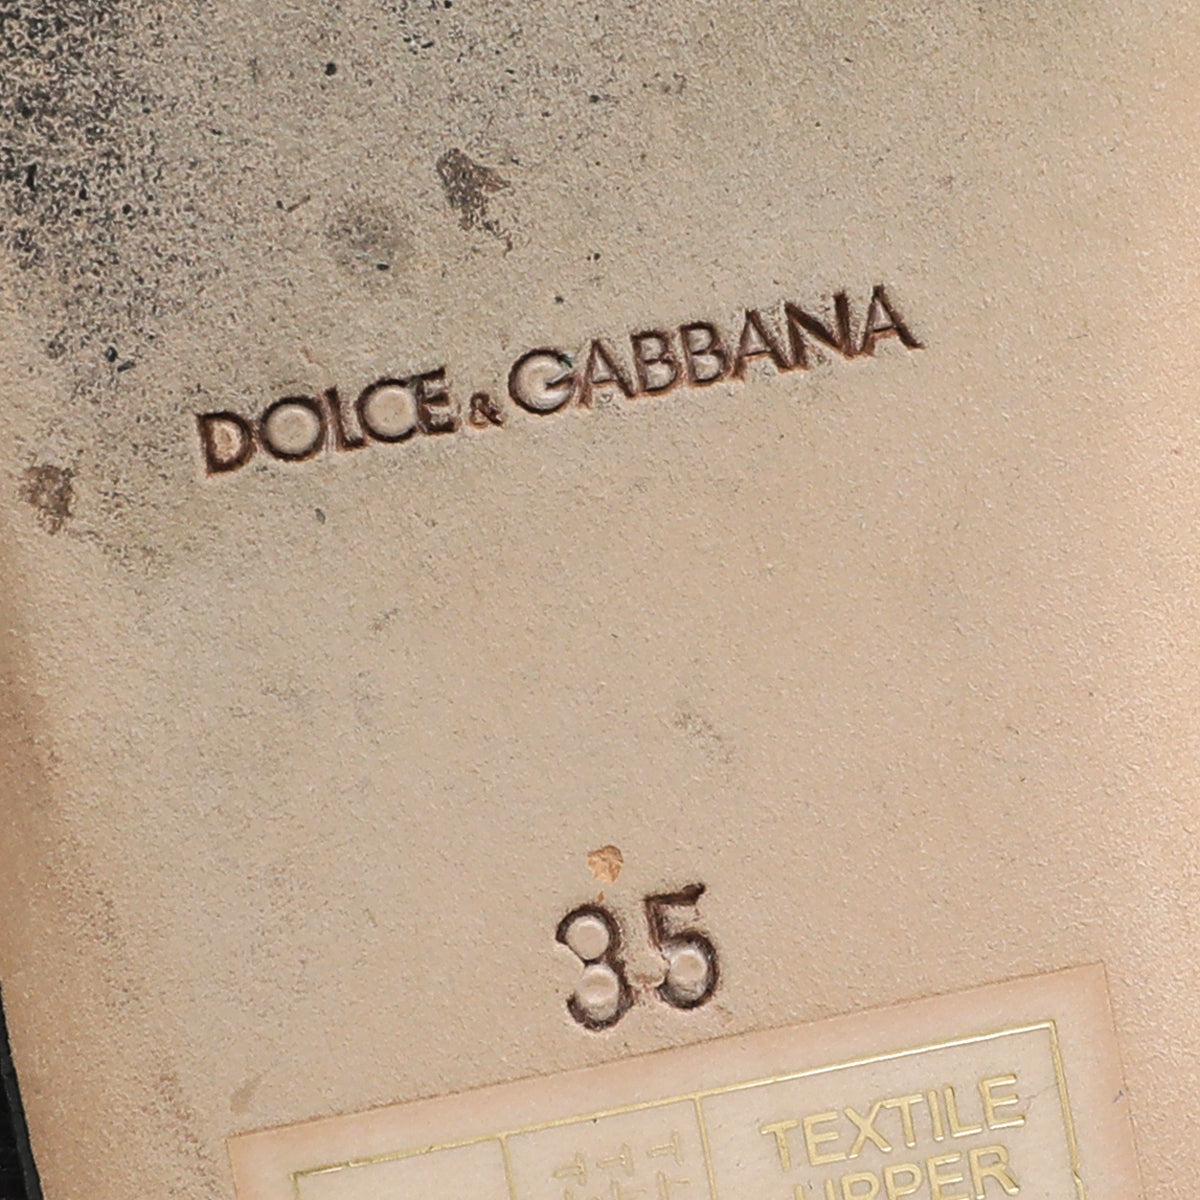 Dolce & Gabbana Bicolor Striped Ballerina Flats 35